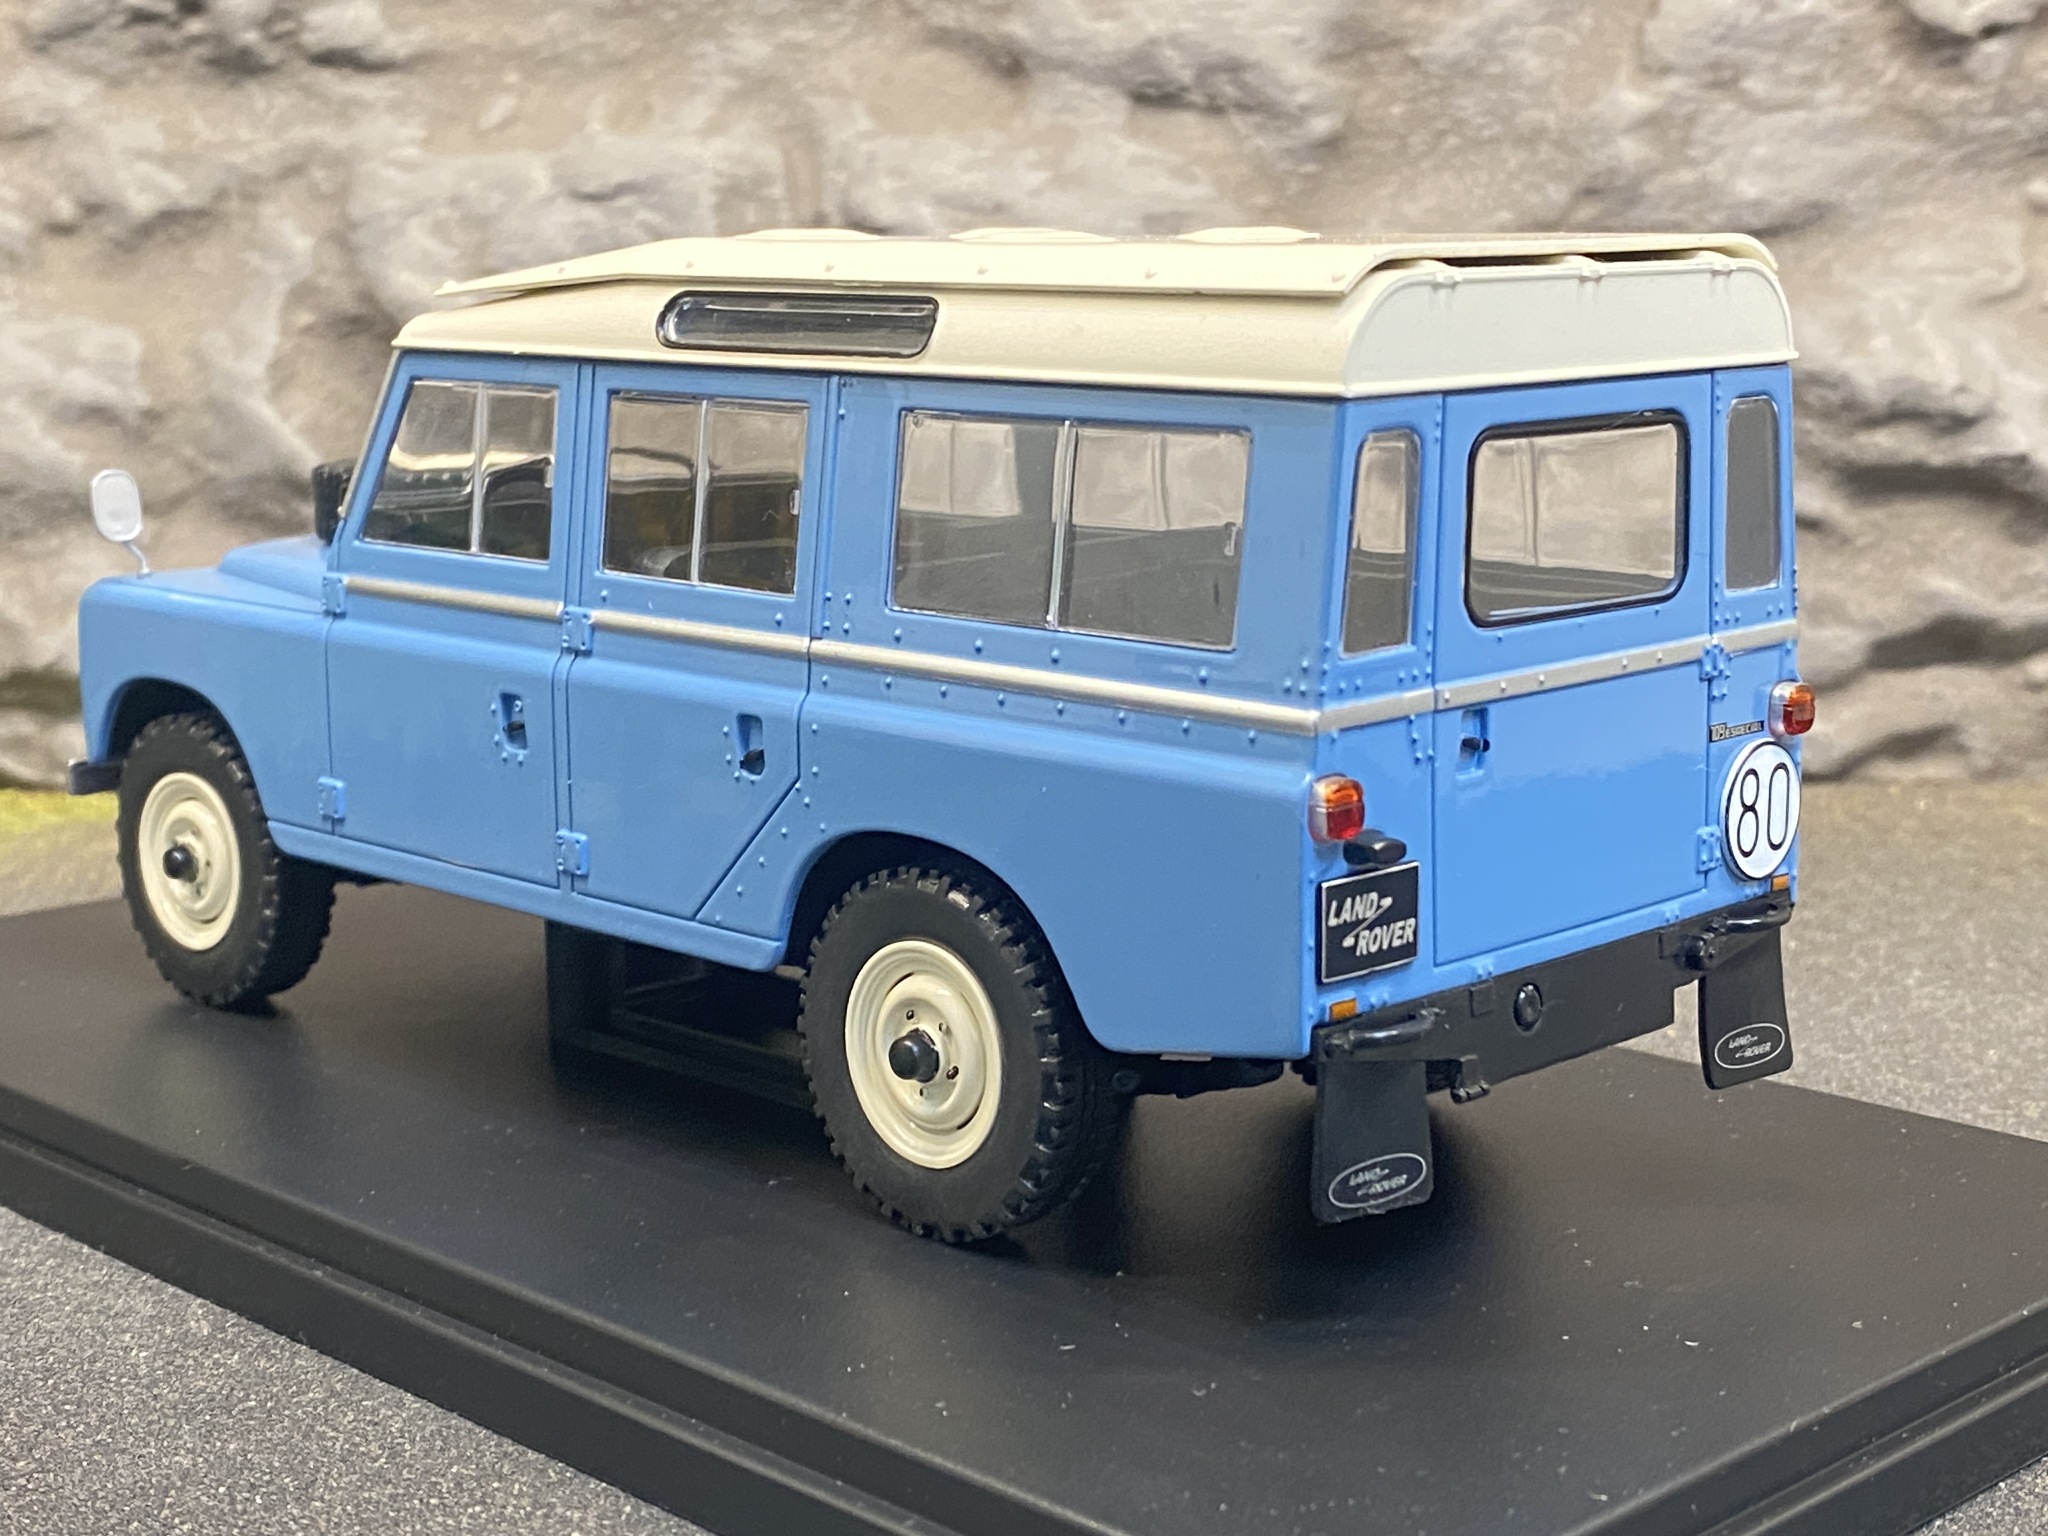 Skala 1/24 Land Rover Series III 109, Blå med vitt tak från WhiteBox